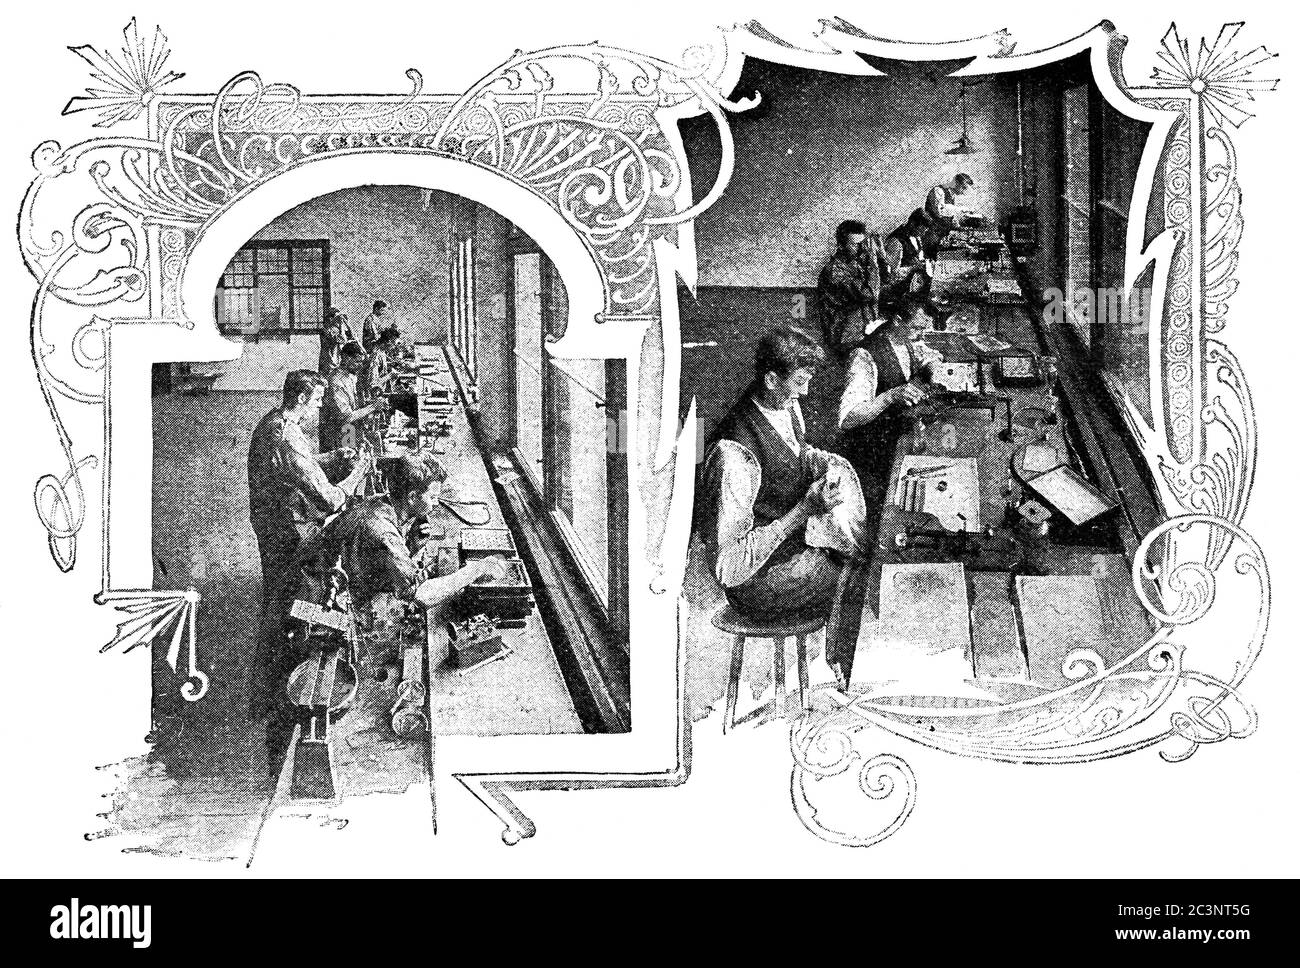 Feinschliff- und Zentrierwerkstatt, C. P. Goerz. Illustration des 19. Jahrhunderts. Weißer Hintergrund. Stockfoto